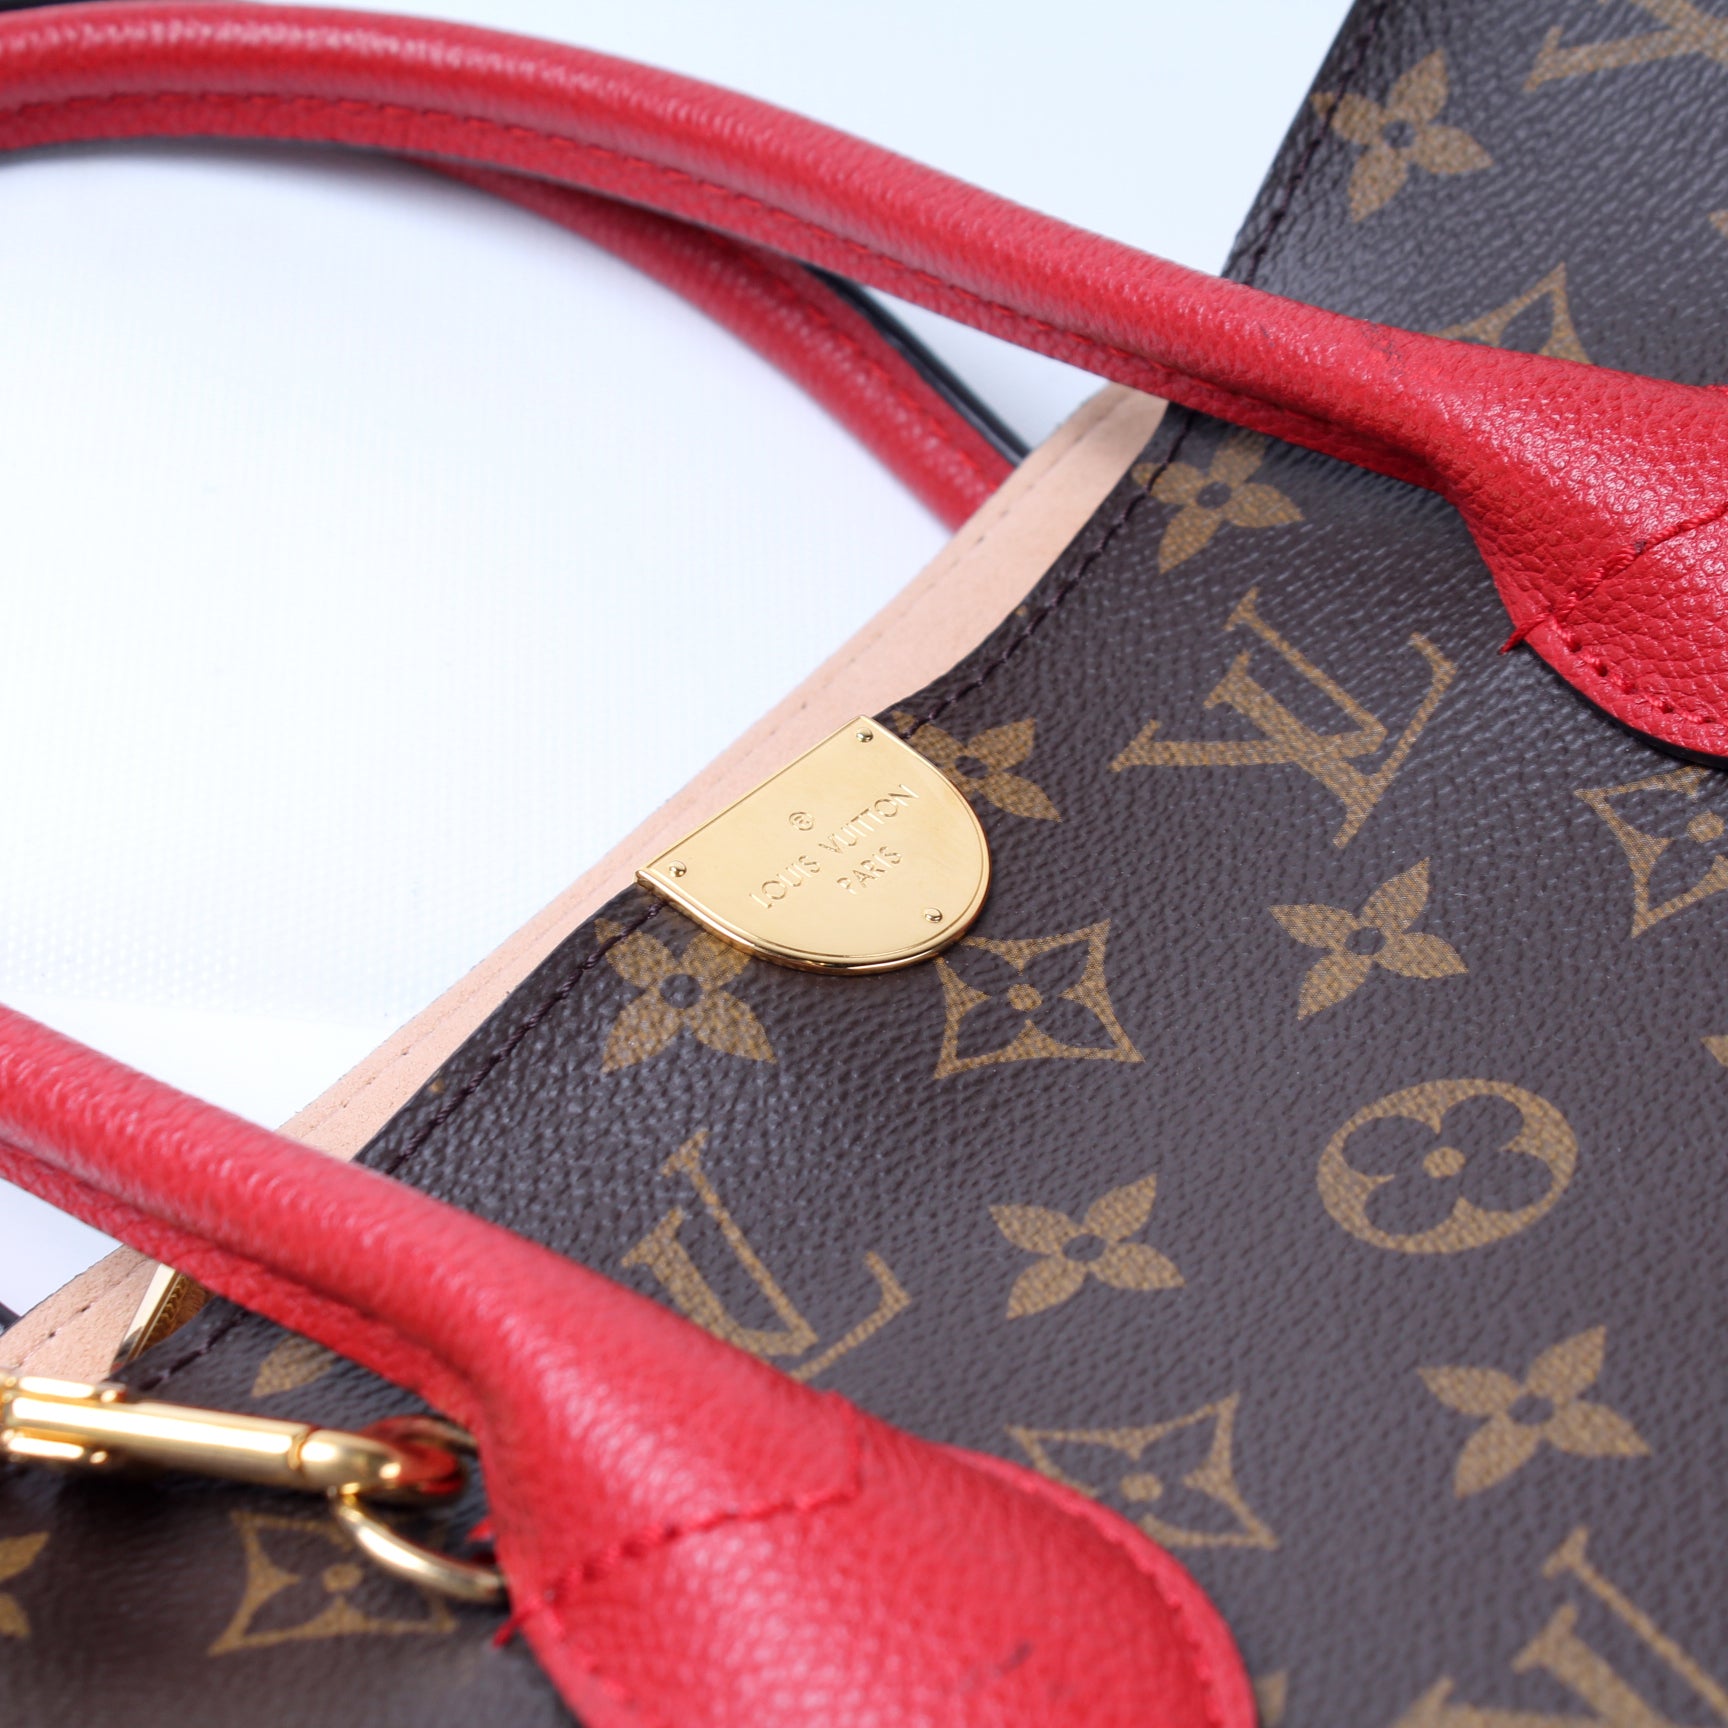 Flandrin Monogram – Keeks Designer Handbags